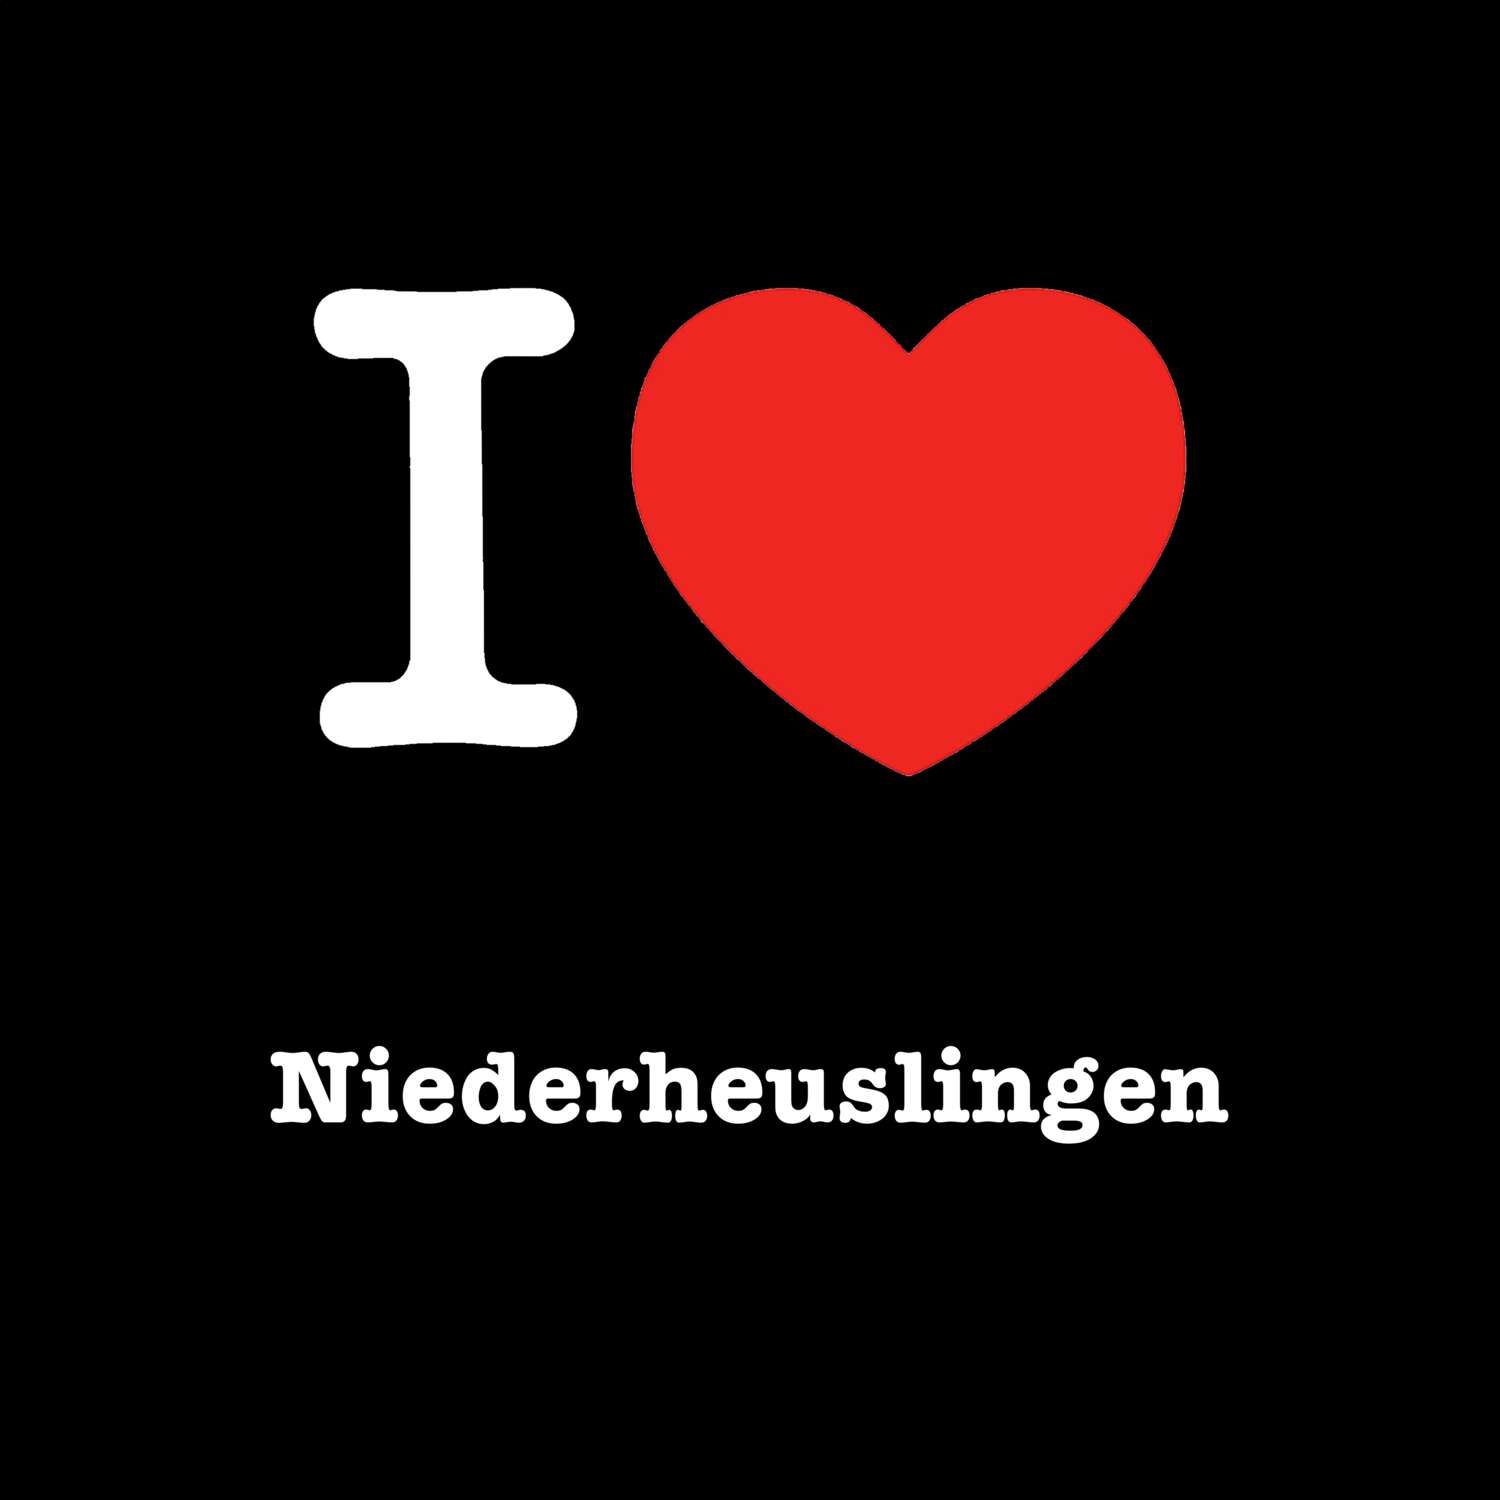 Niederheuslingen T-Shirt »I love«